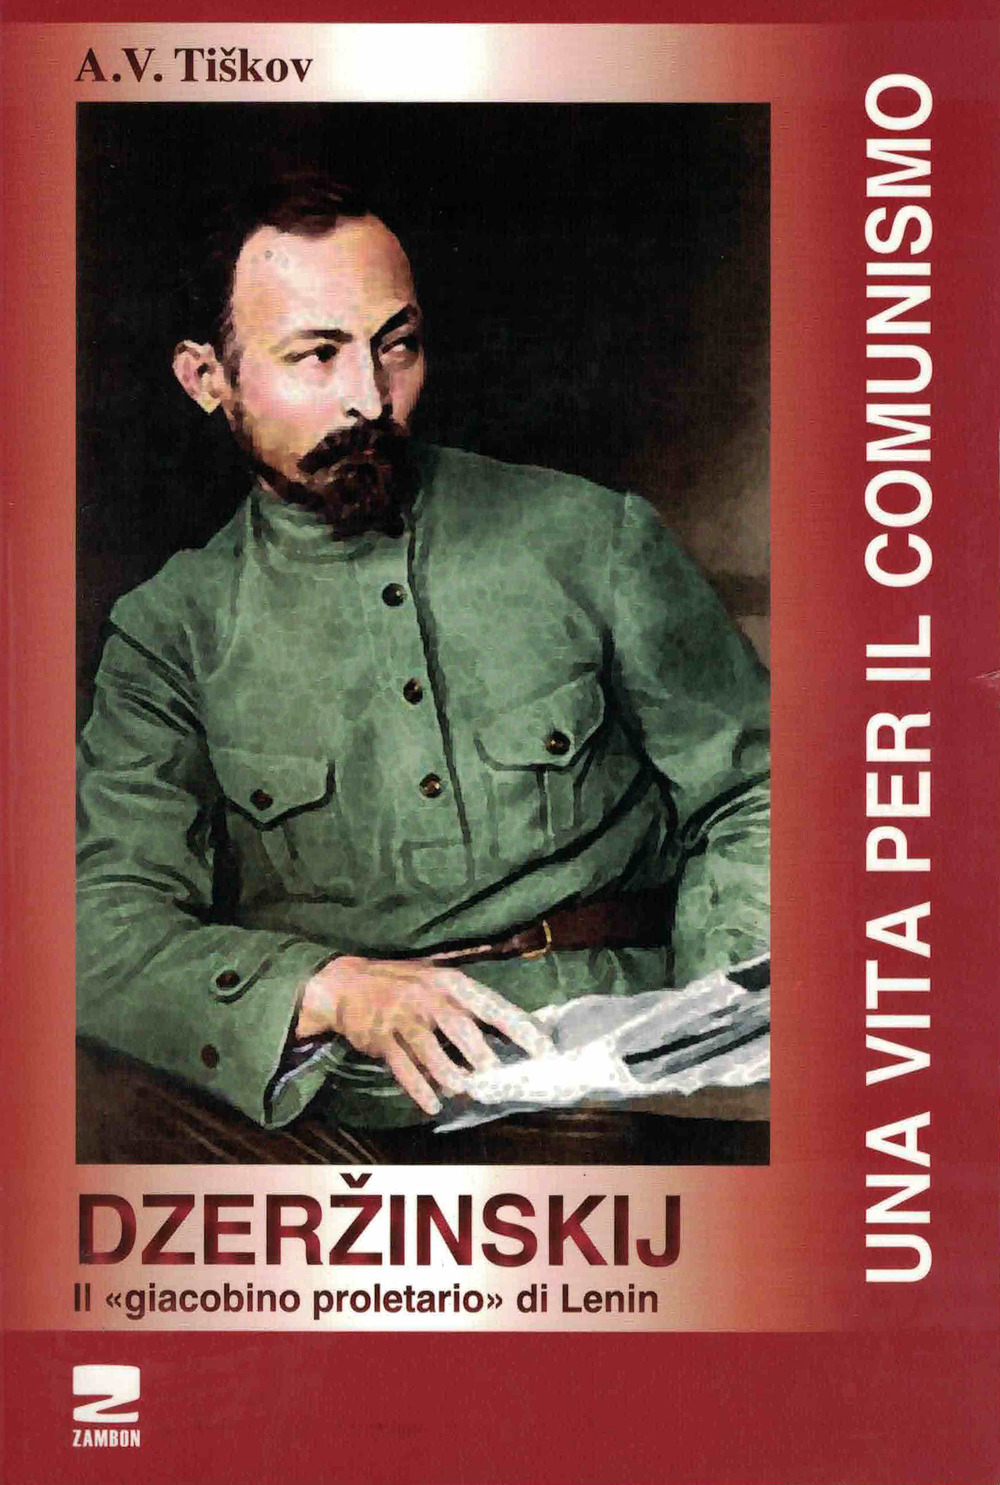 Dzerzinskij «il giacobino proletario di Lenin». Una vita per il comunismo